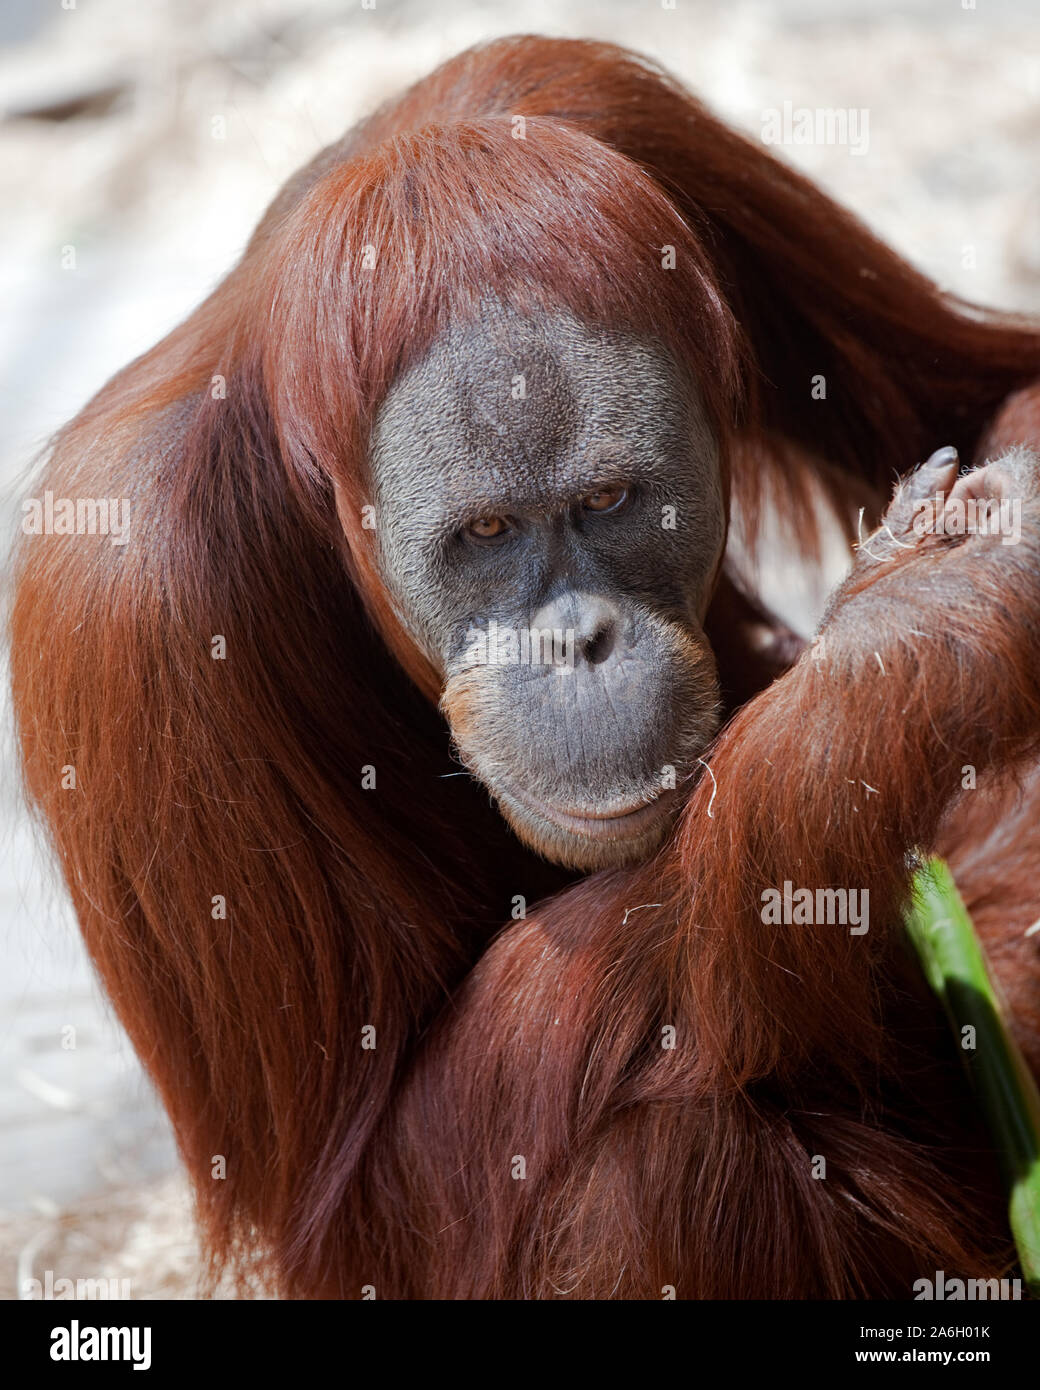 In via di estinzione orango spostato dal Land clearing per palm lo zucchero Foto Stock